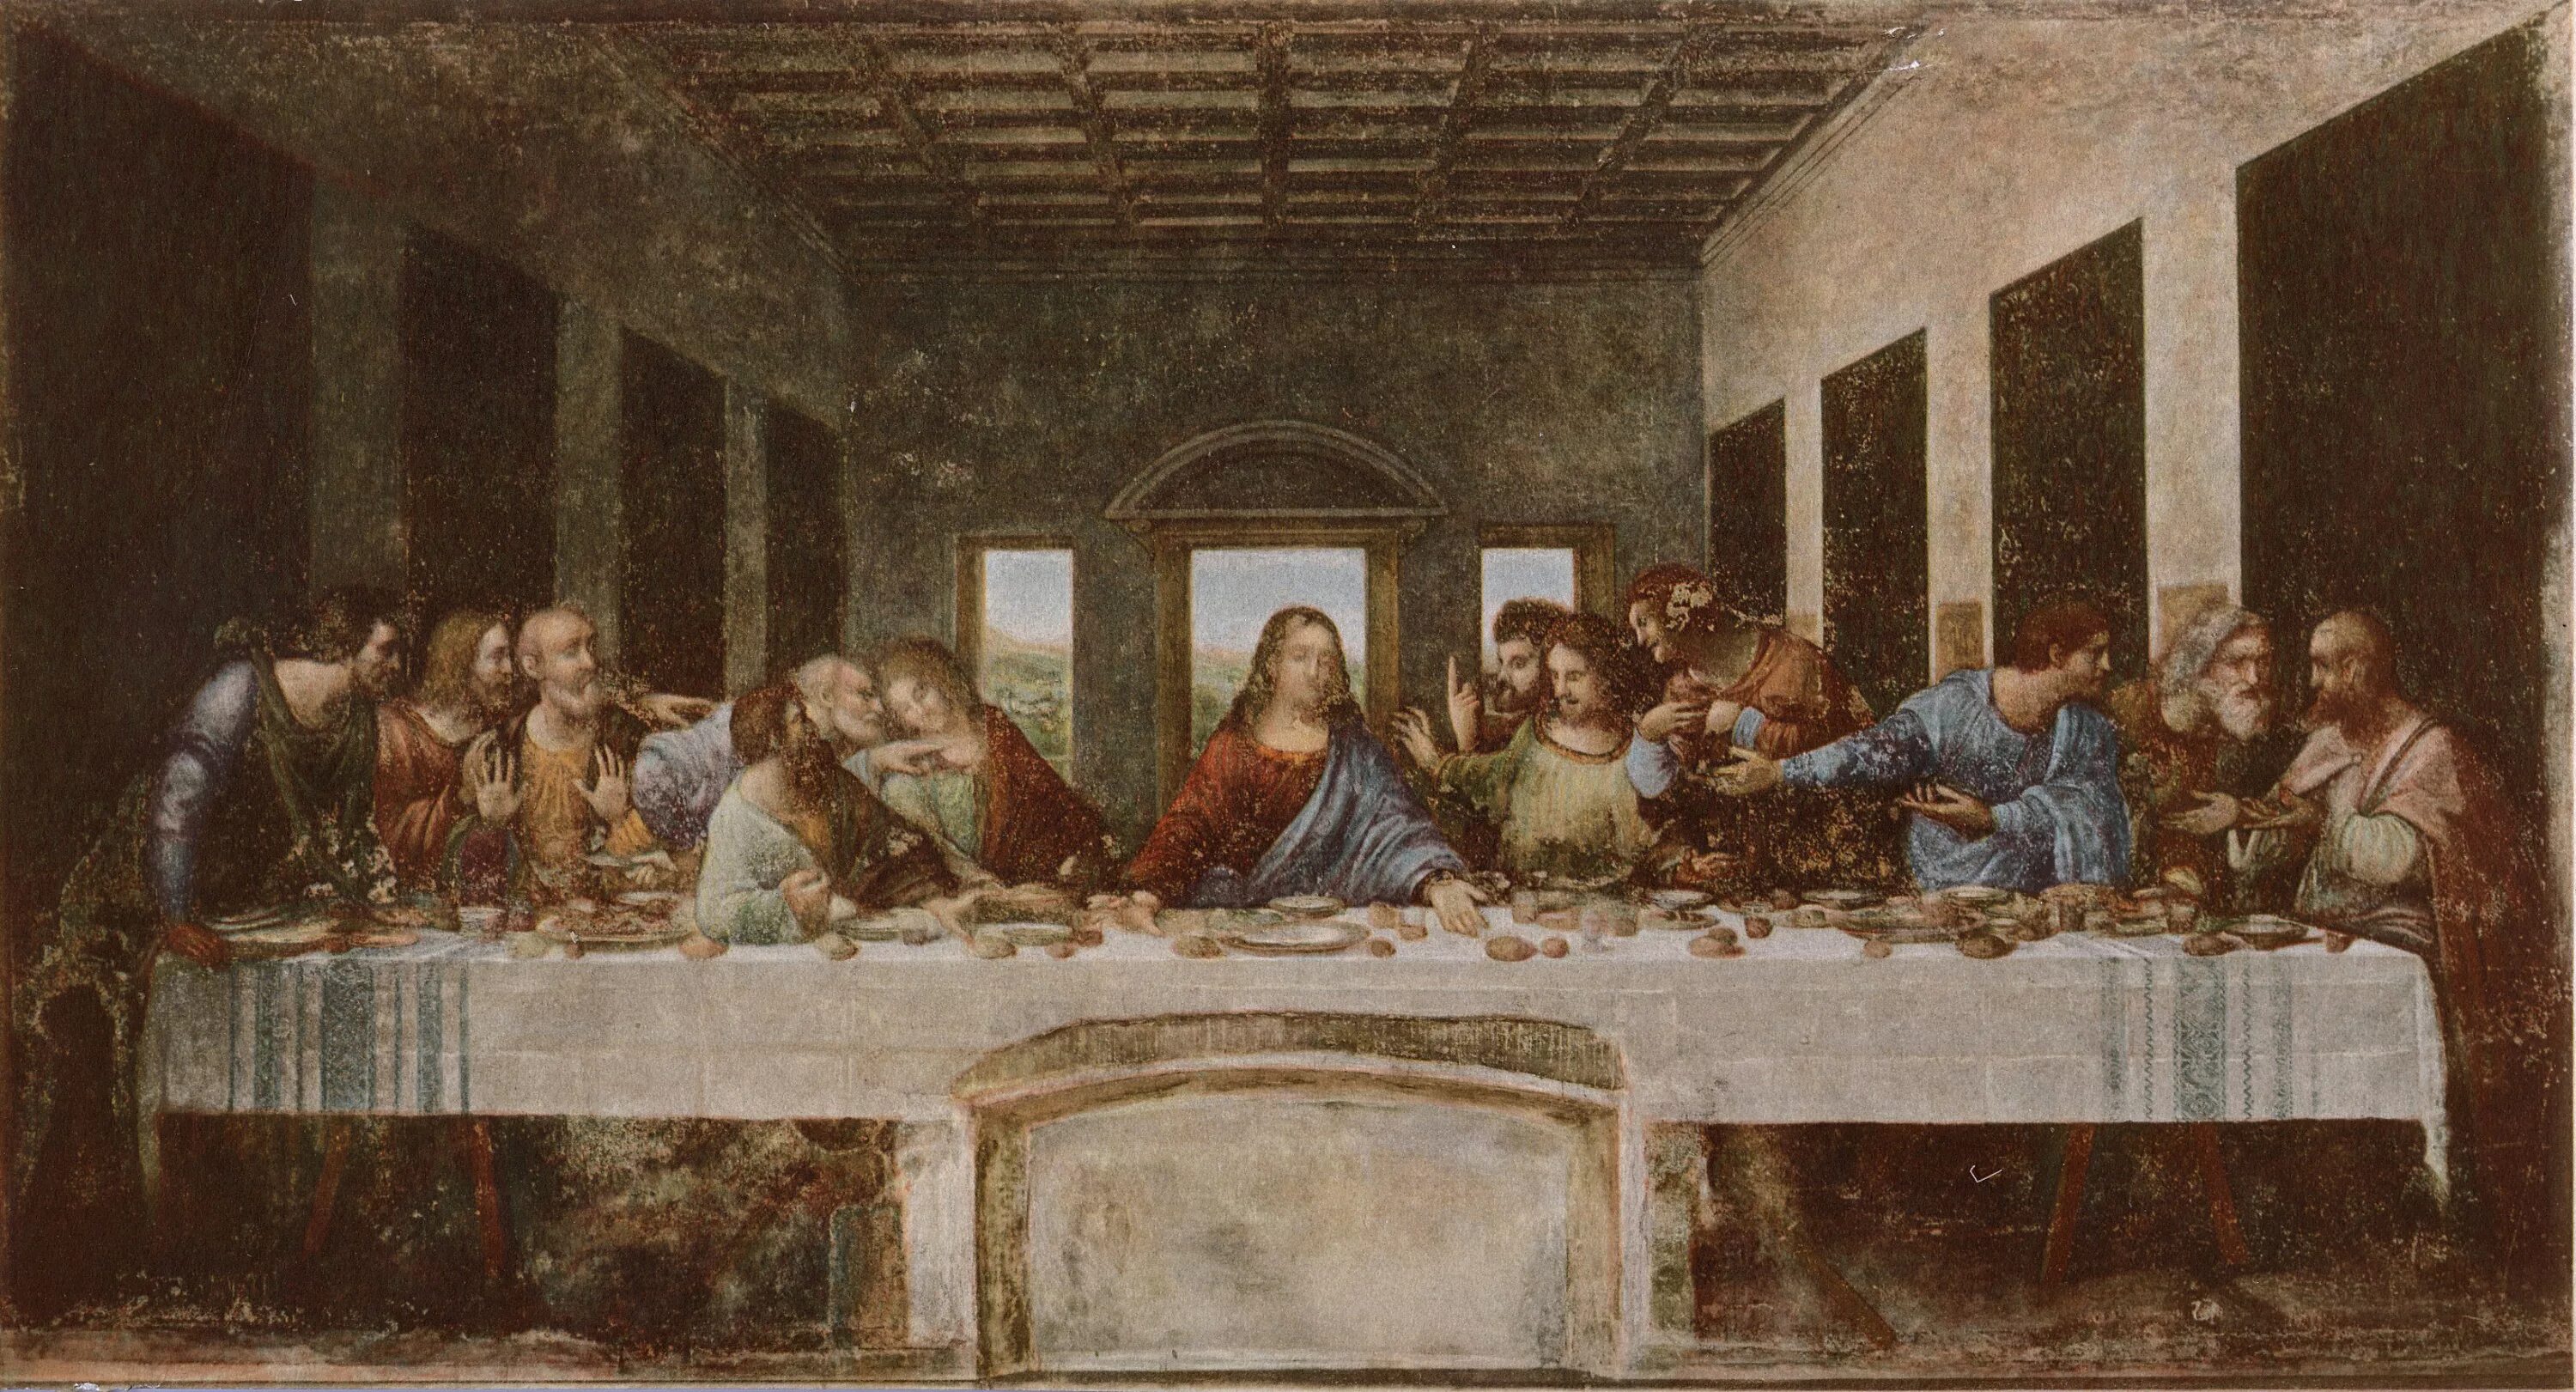 Время тайной вечери. Картина да Винчи Тайная вечеря. Тайная вечеря (1498), Леонардо да Винчи. Леонардо Давинчи твйная вечера. Тайна вечеря Леонардо да Винчи.